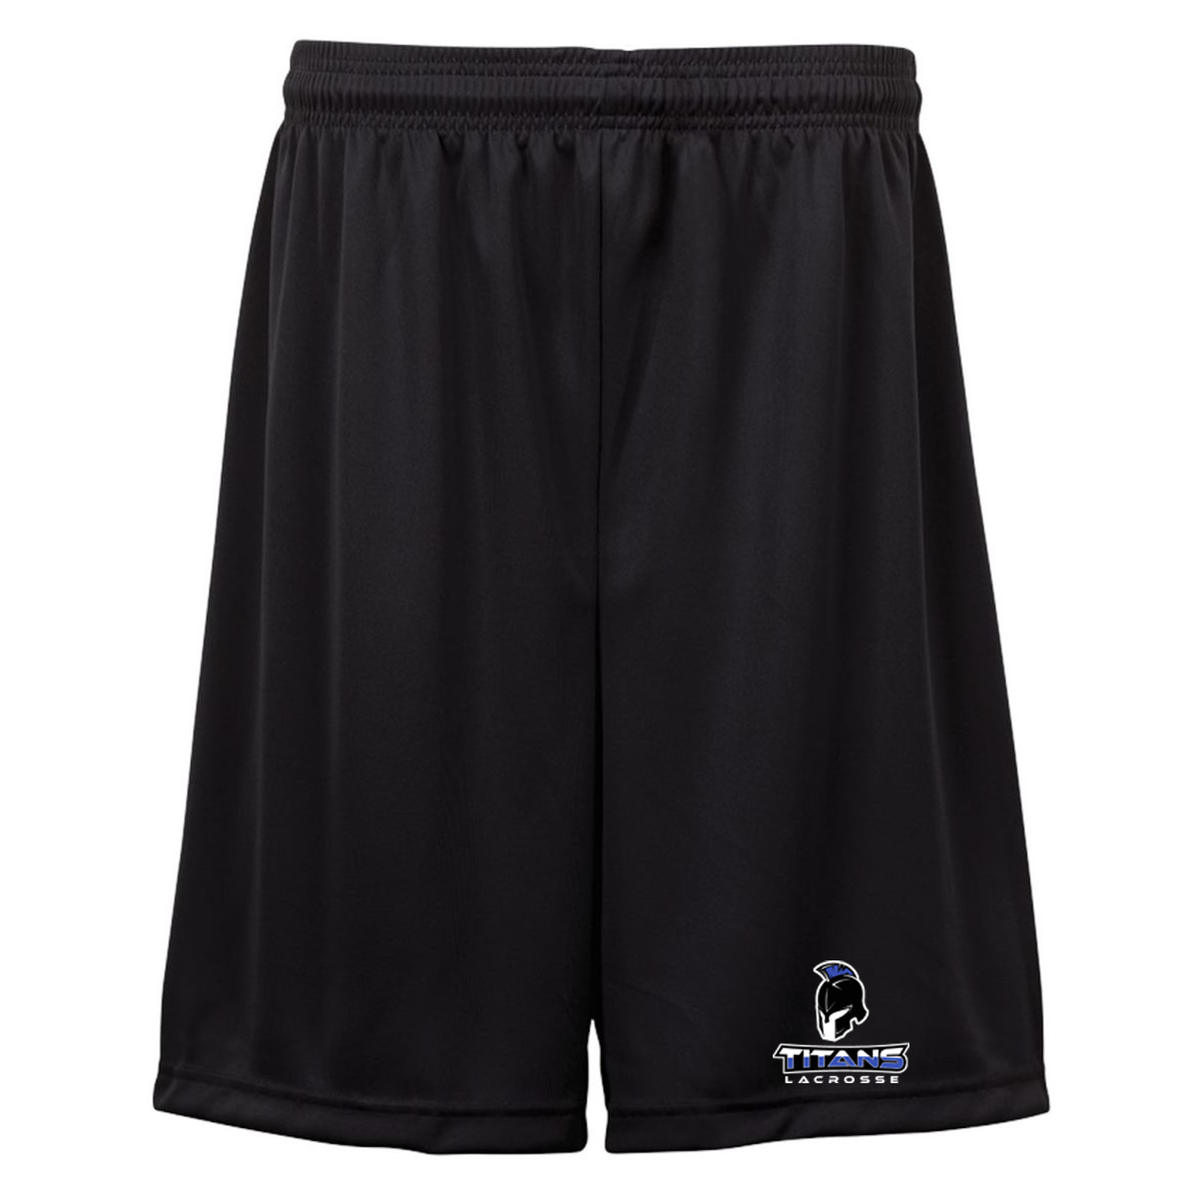 Southwest Titans Lacrosse Shorts